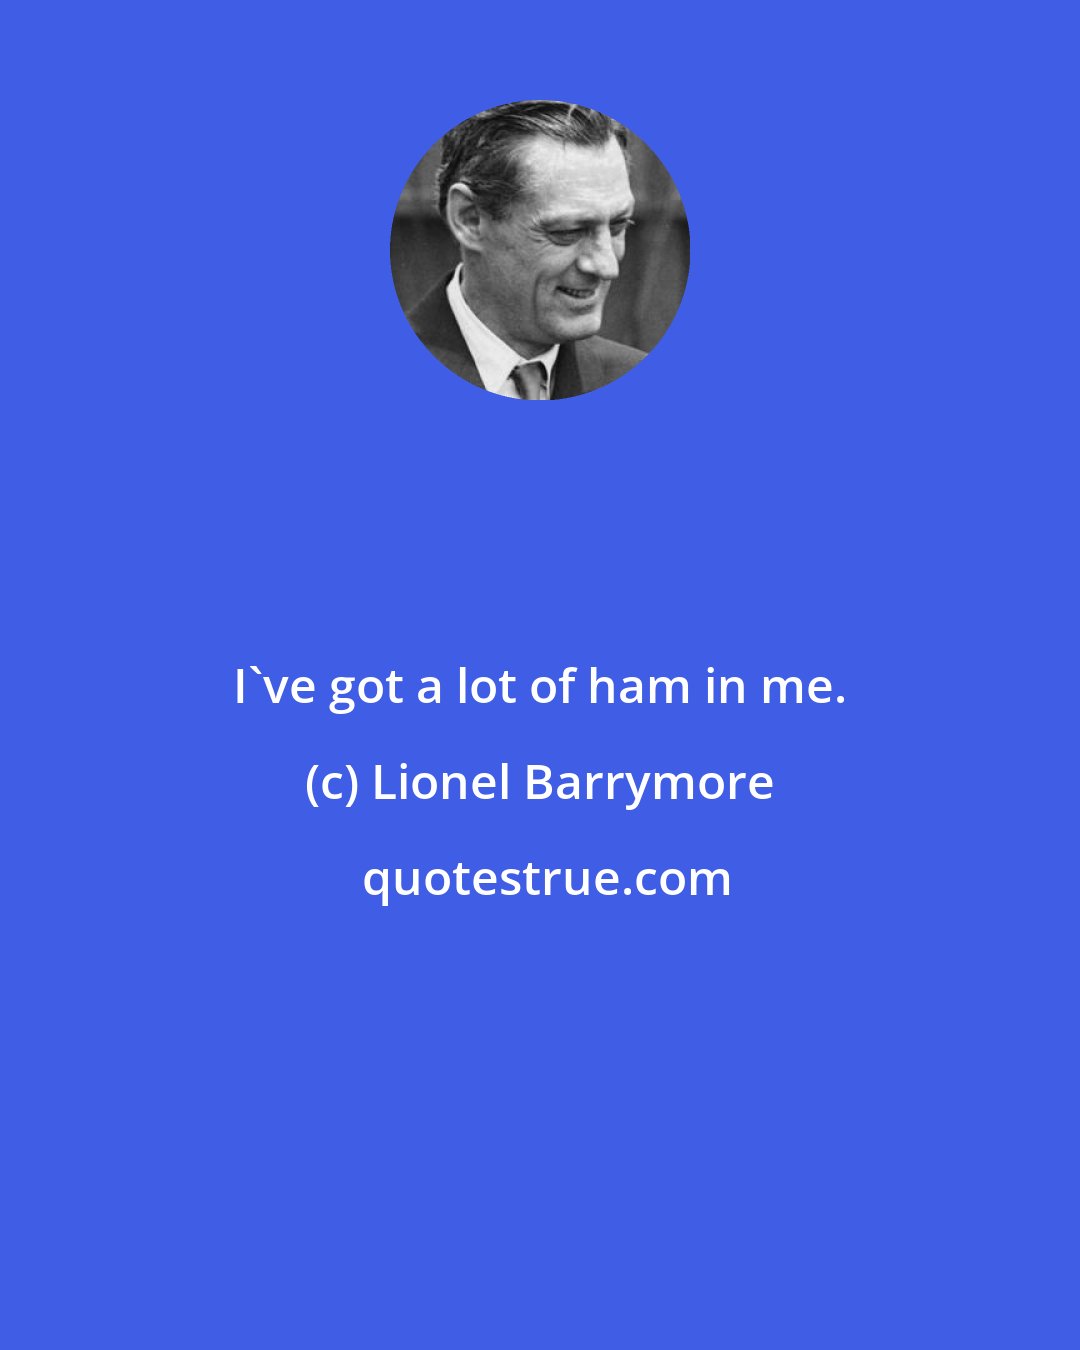 Lionel Barrymore: I've got a lot of ham in me.